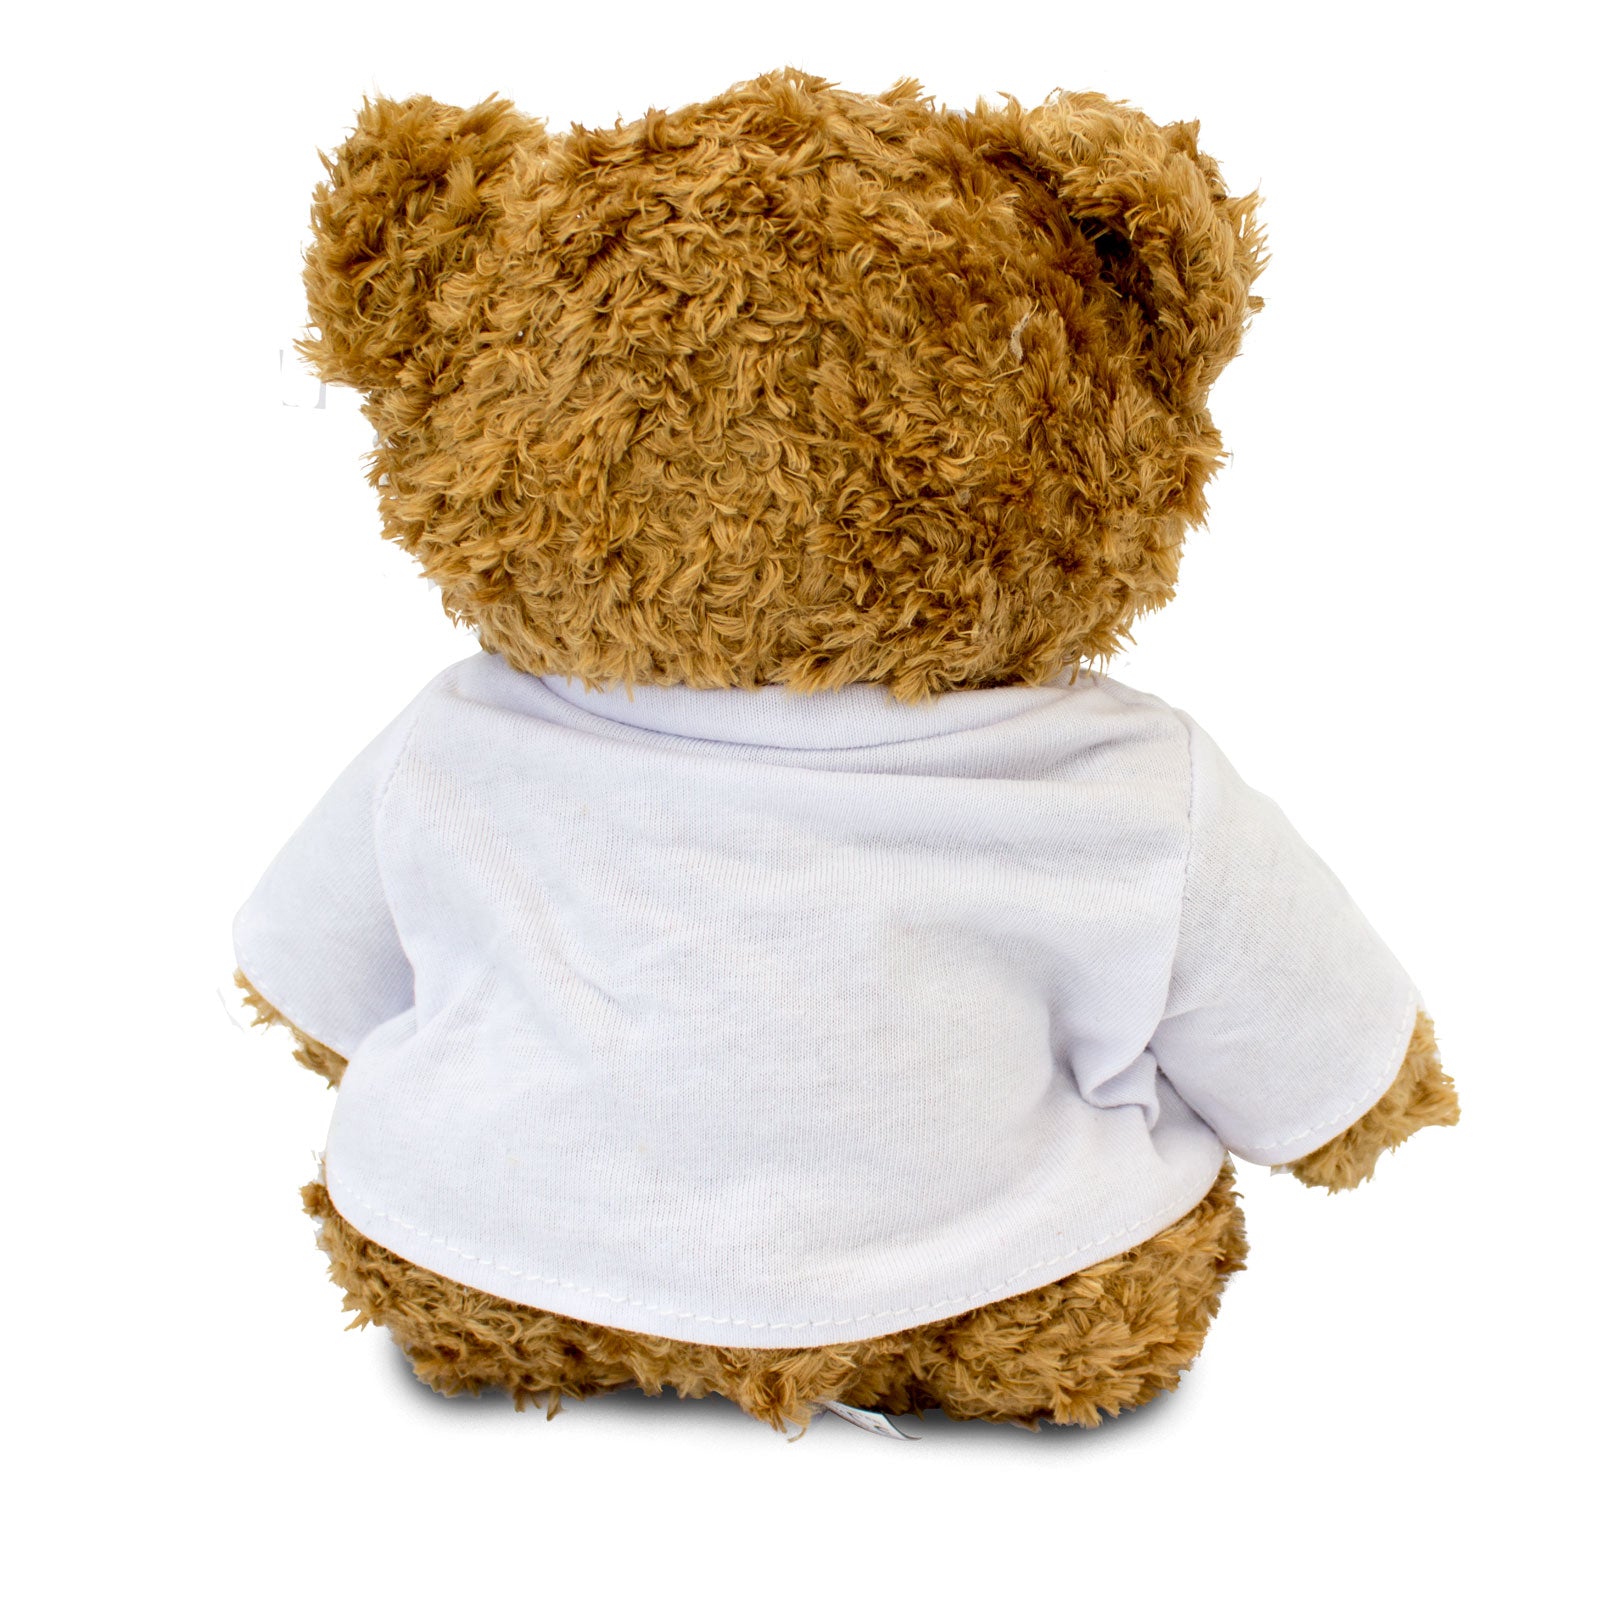 Get Well Soon Ethan - Teddy Bear